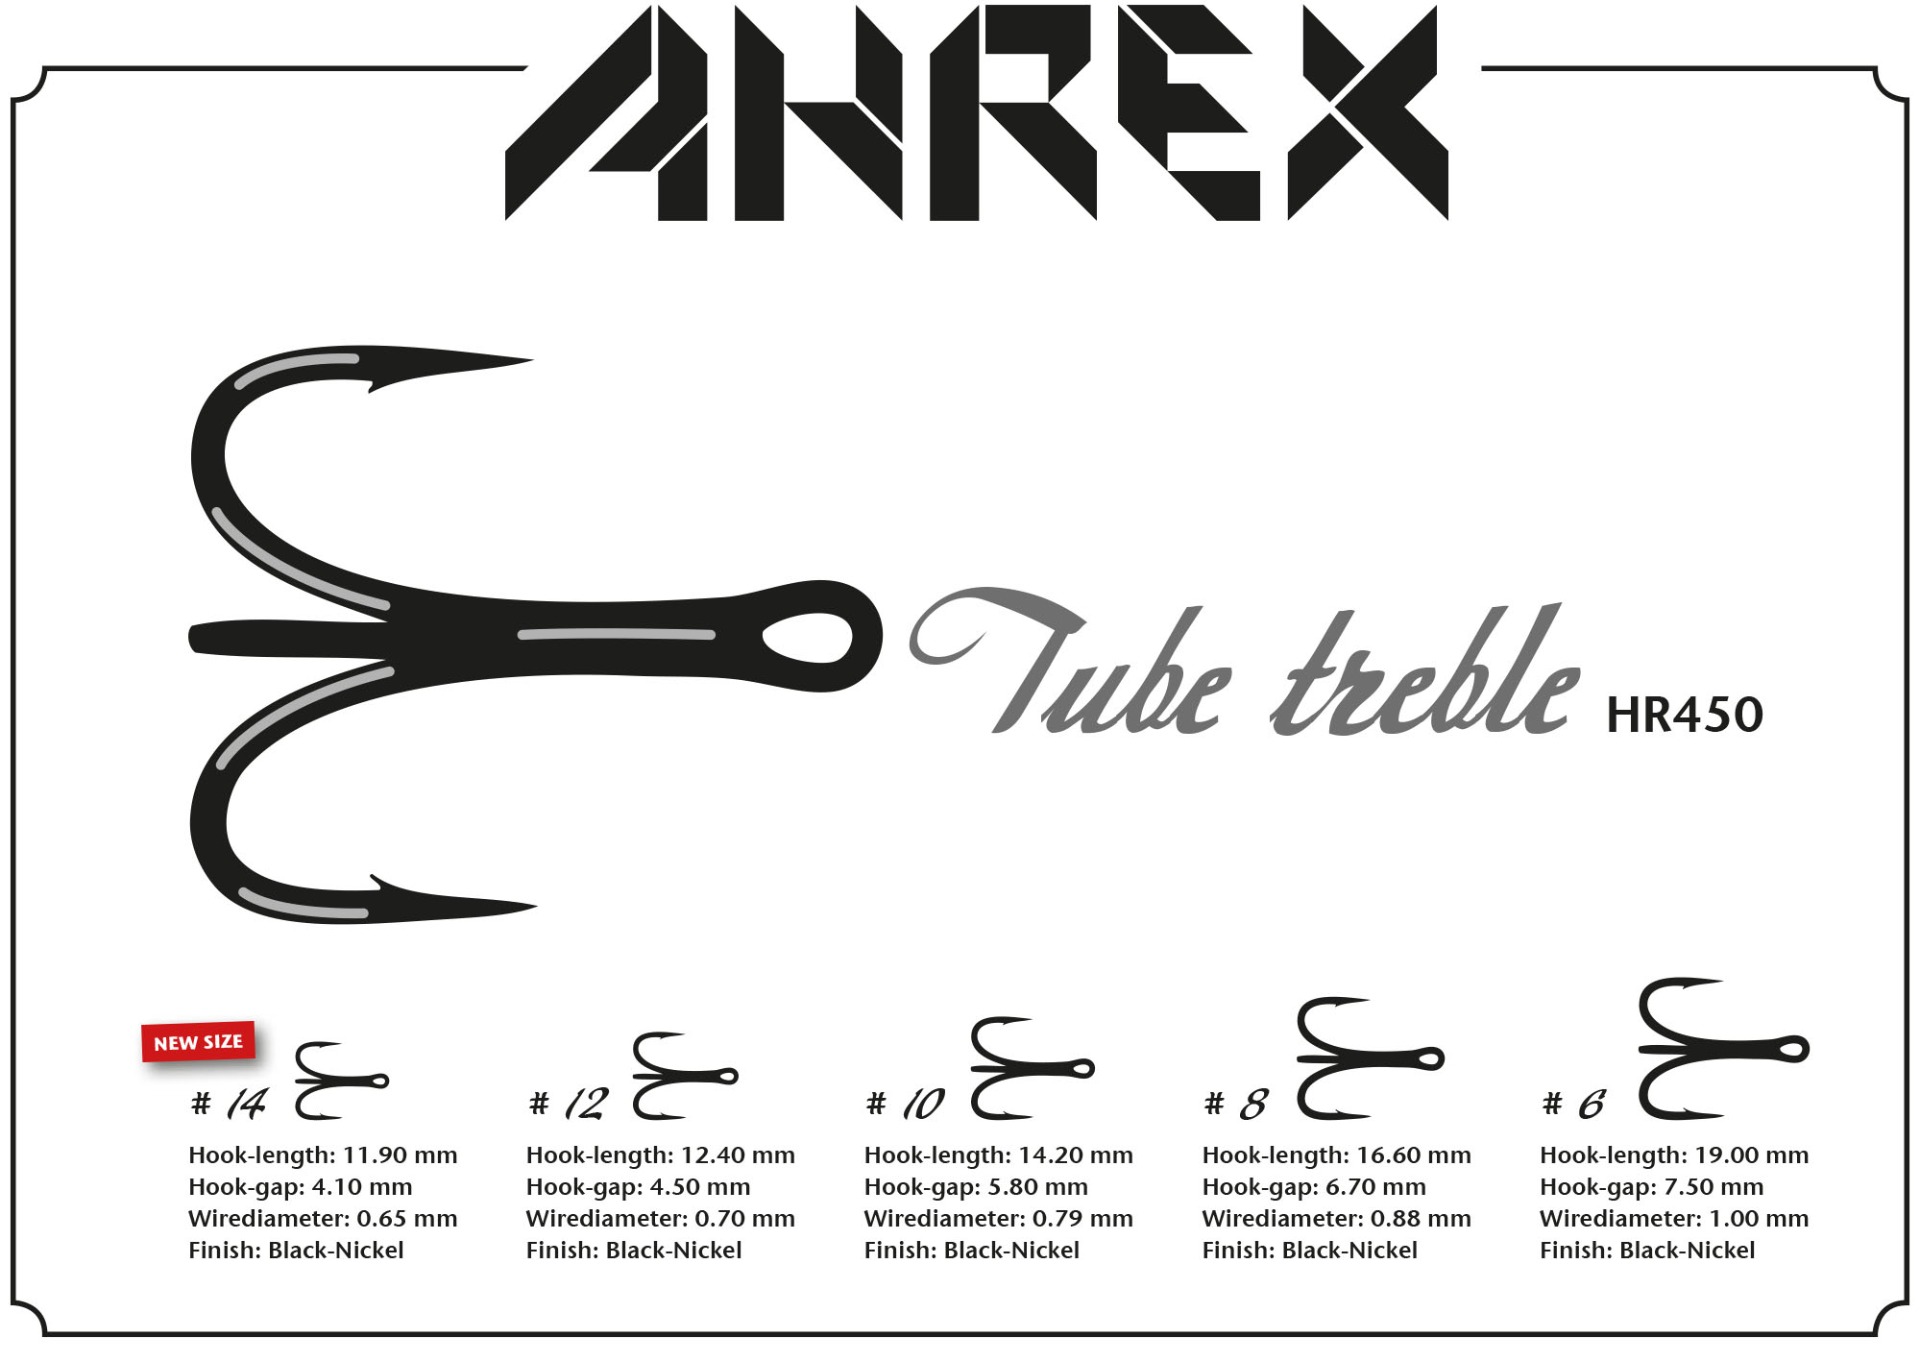 Ahrex Triple Tube #8